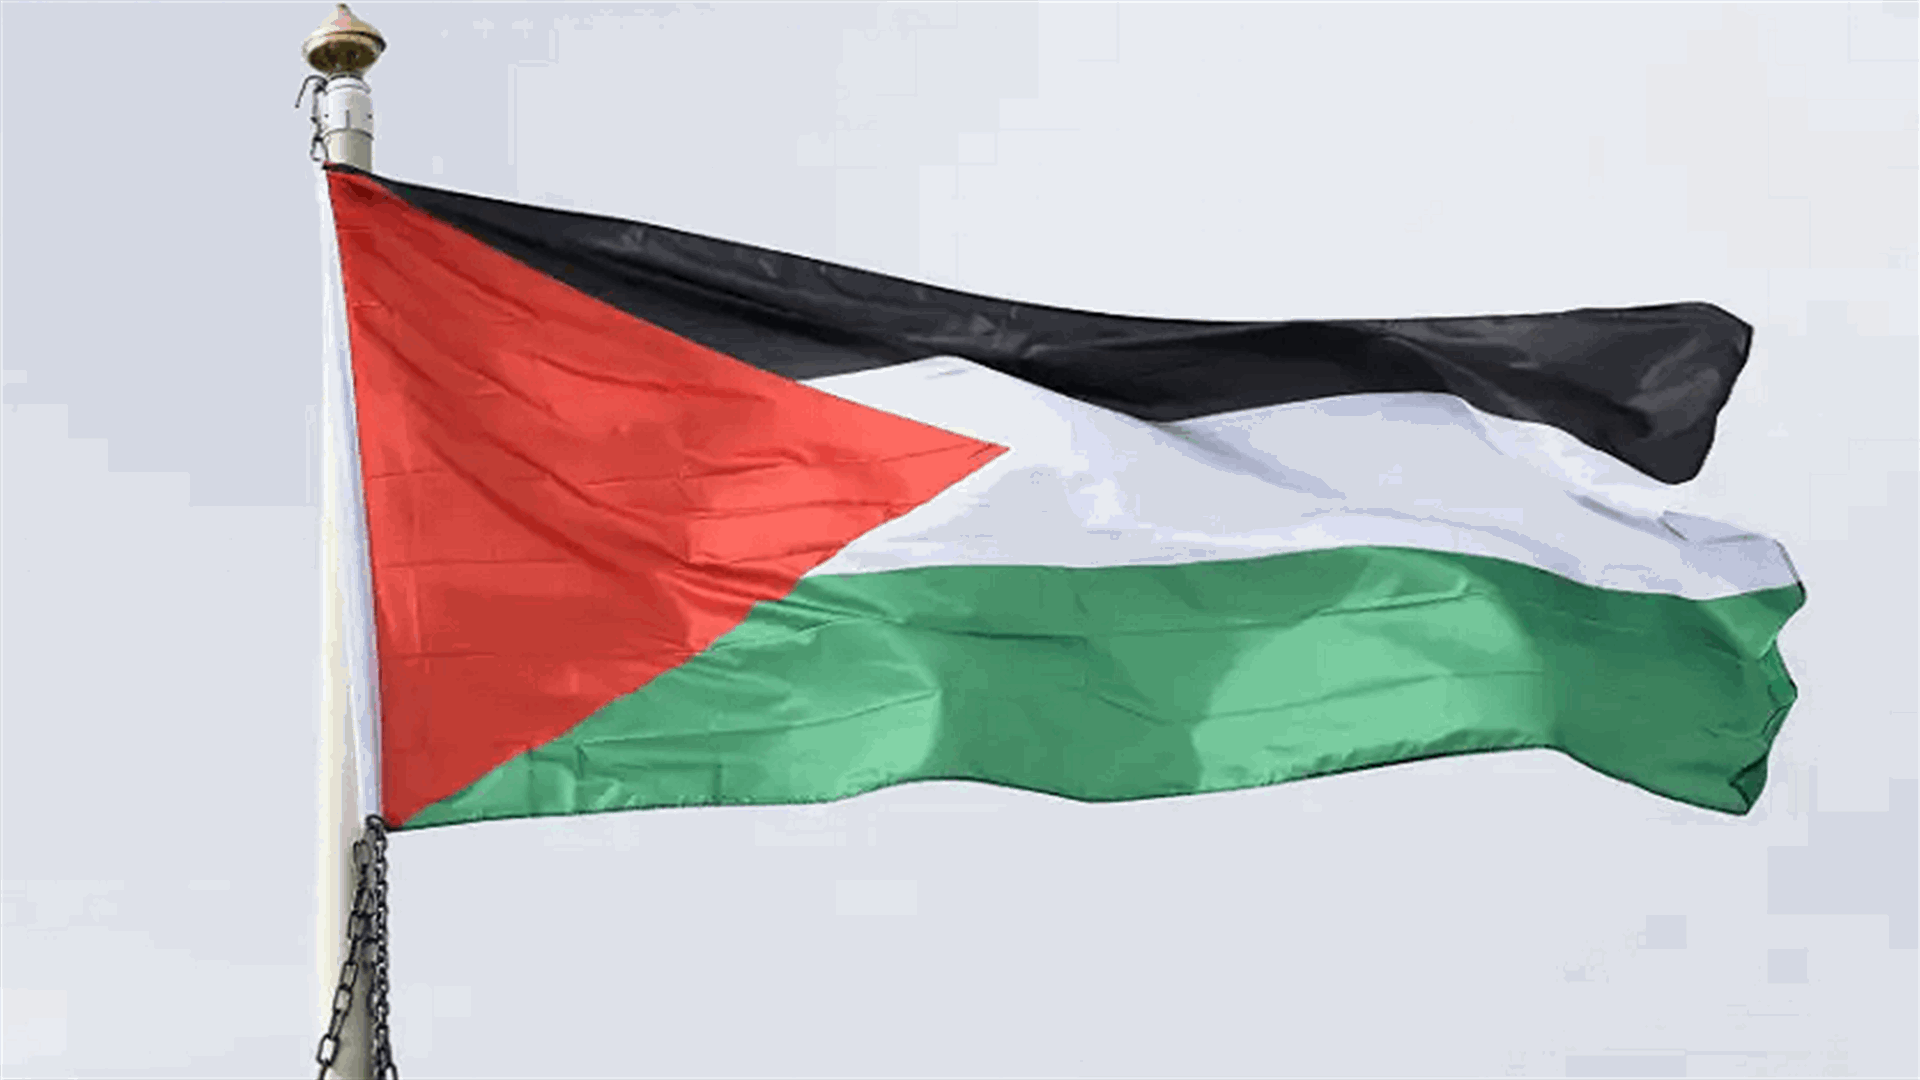 الرئاسة الفلسطينية تتفق مع مصر على إرسال مساعدات لغزة من معبر كرم أبو سالم